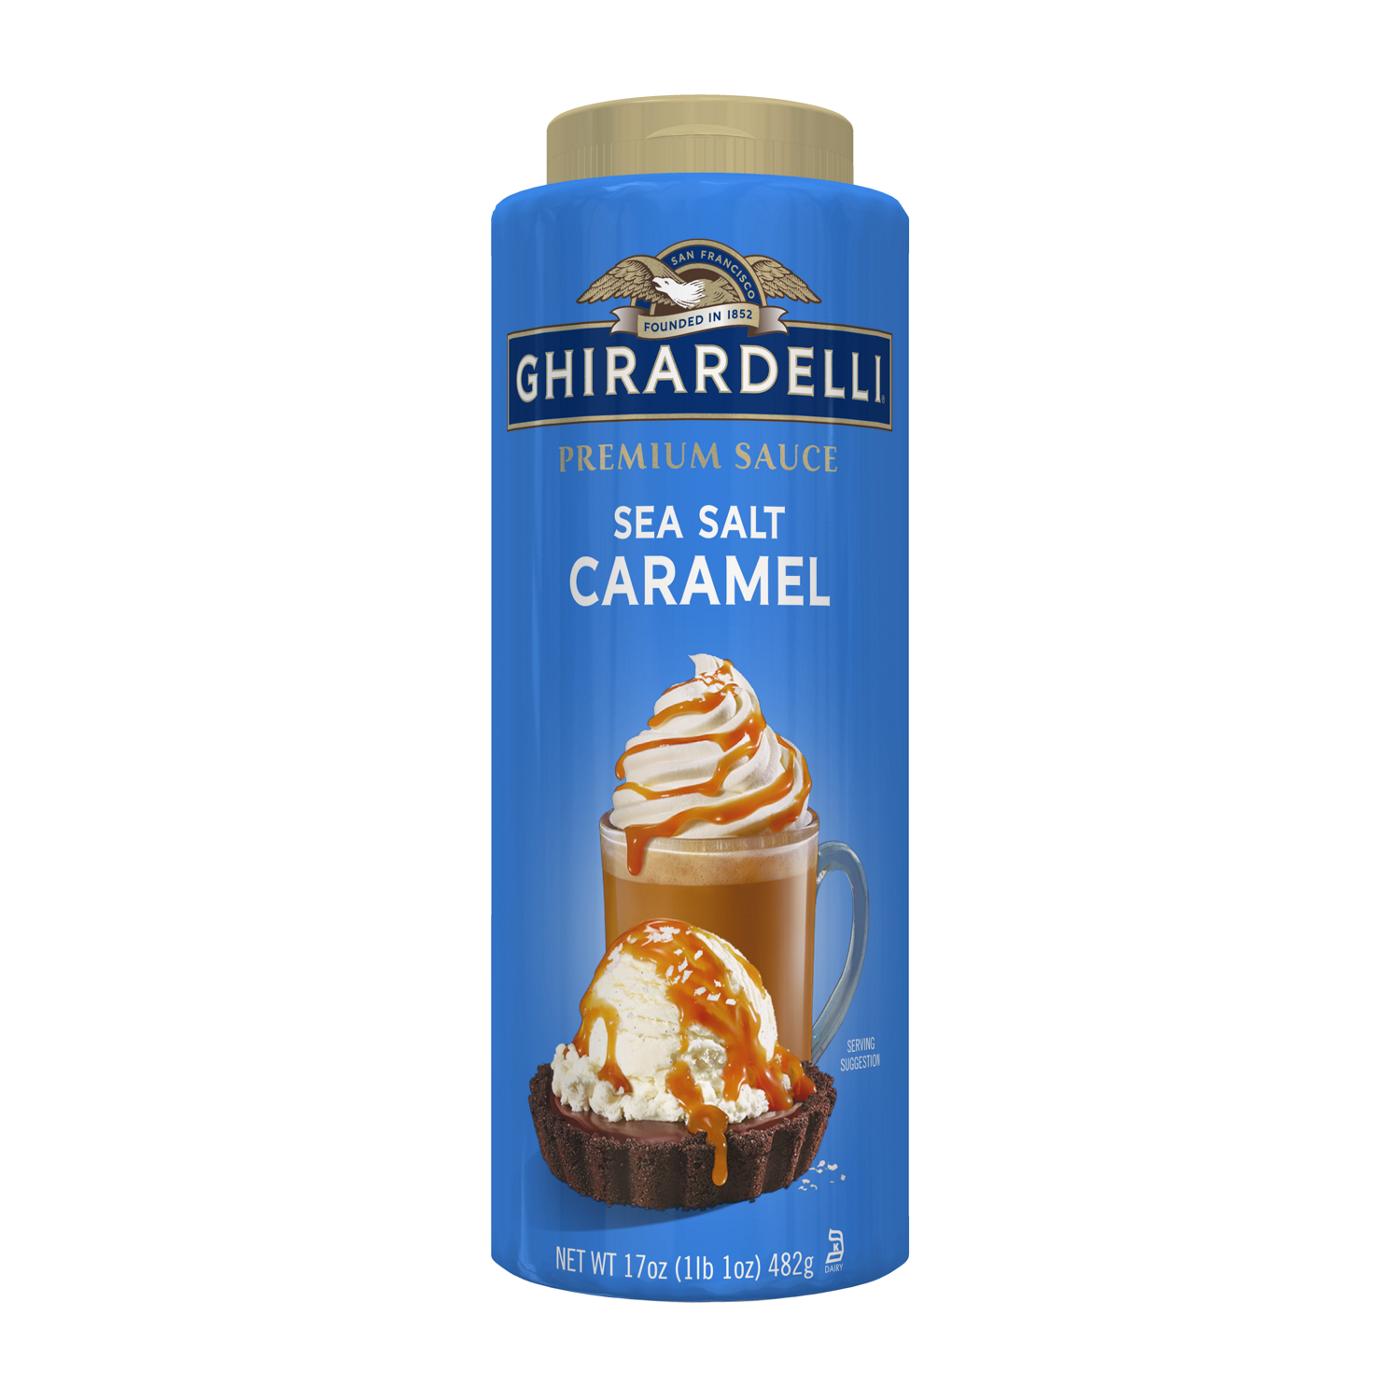 Ghirardelli Premium Sea Salt Caramel Sauce; image 1 of 7